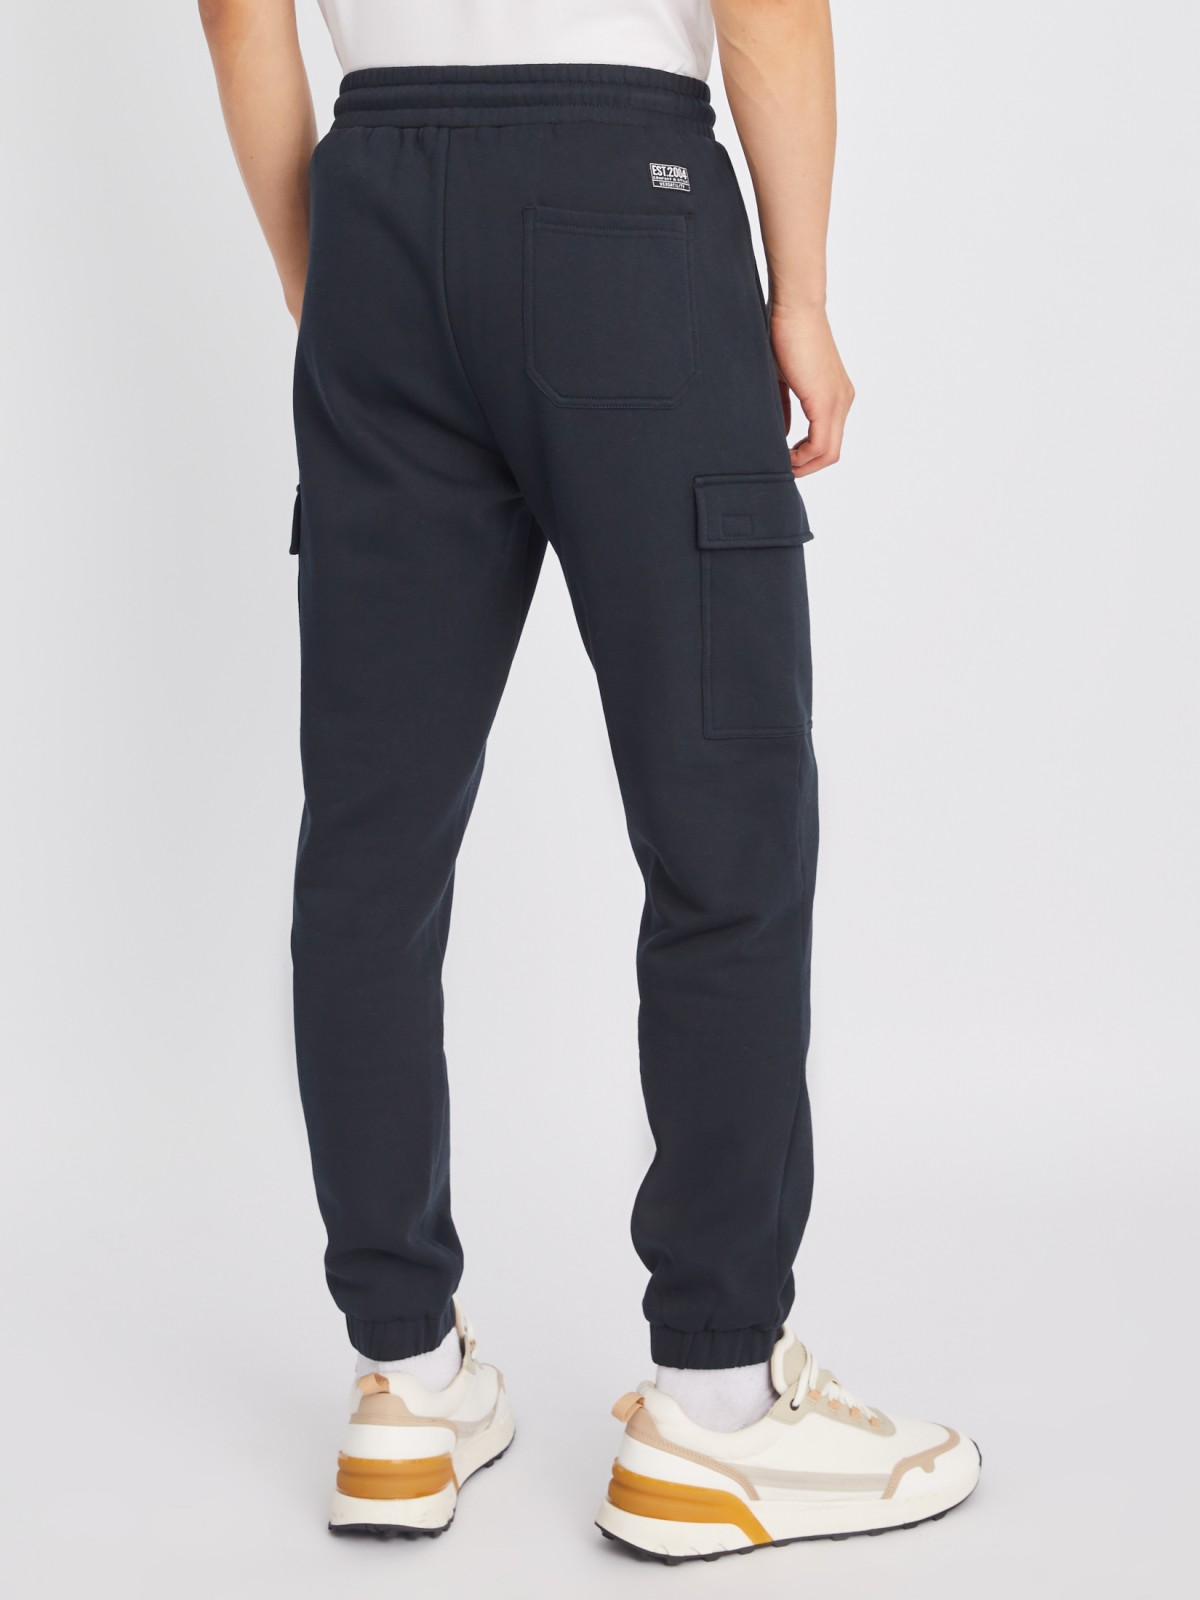 Утеплённые брюки-джоггеры на резинке с карманами карго zolla 213347675043, цвет темно-синий, размер M - фото 5